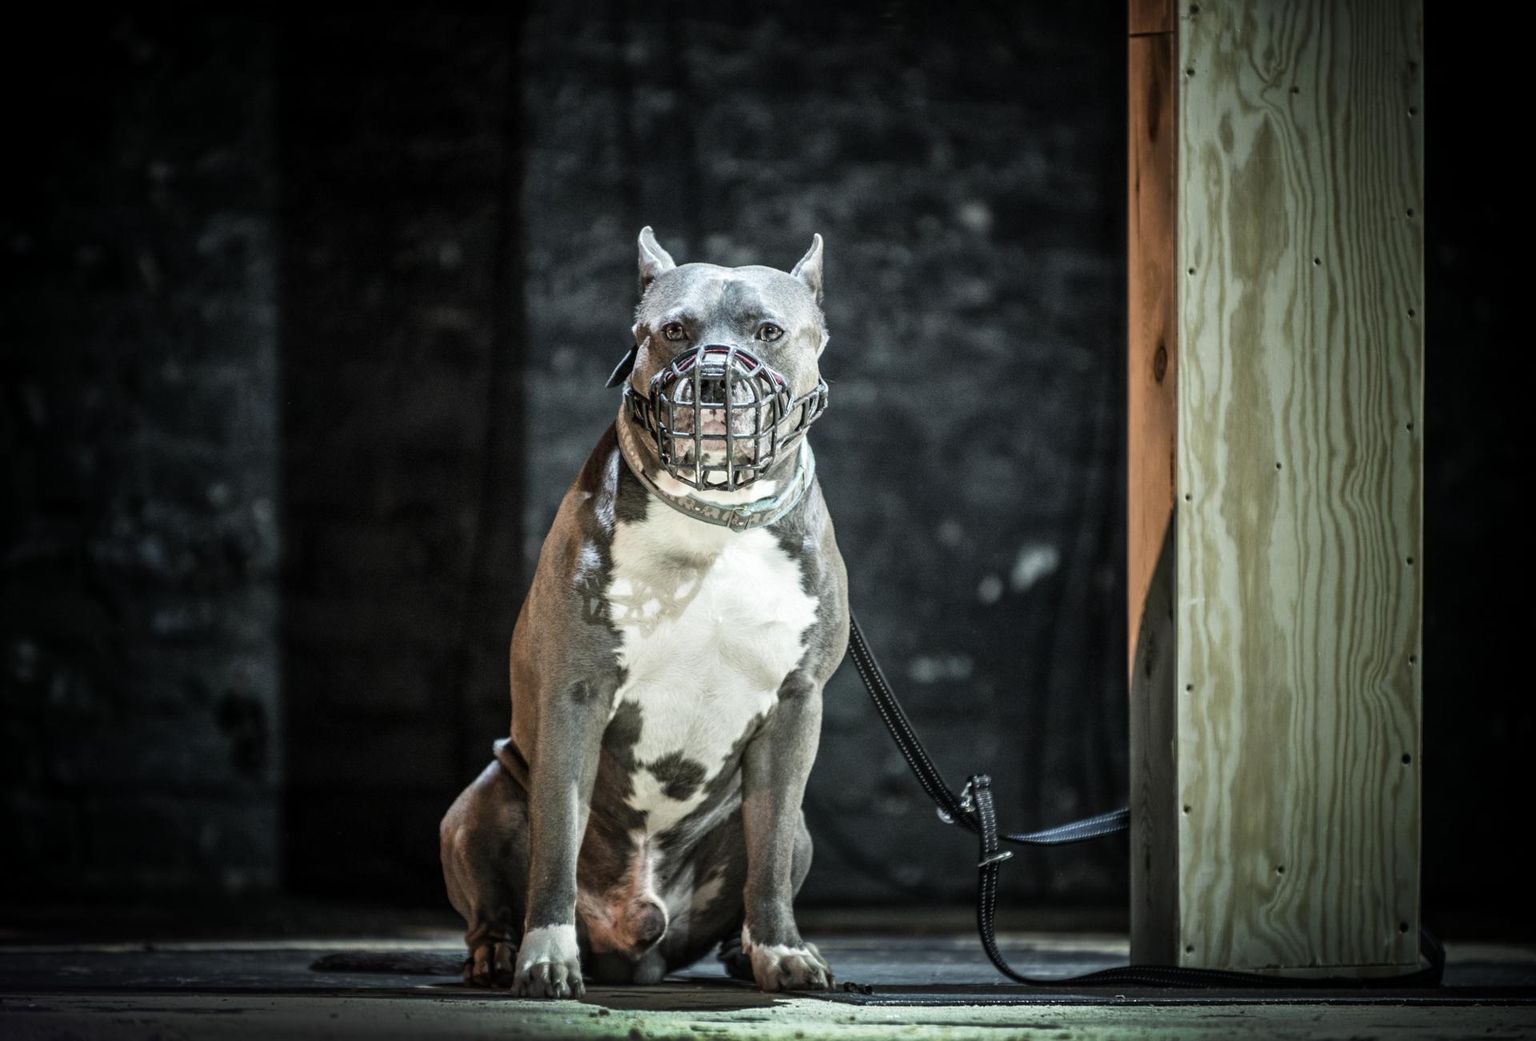 Teatr Powszechny skandaalse ja vastuolulise lavastuse «Needus» («Klatwa») üks tegelane, koer, kes otsib publiku seast moslemeid.